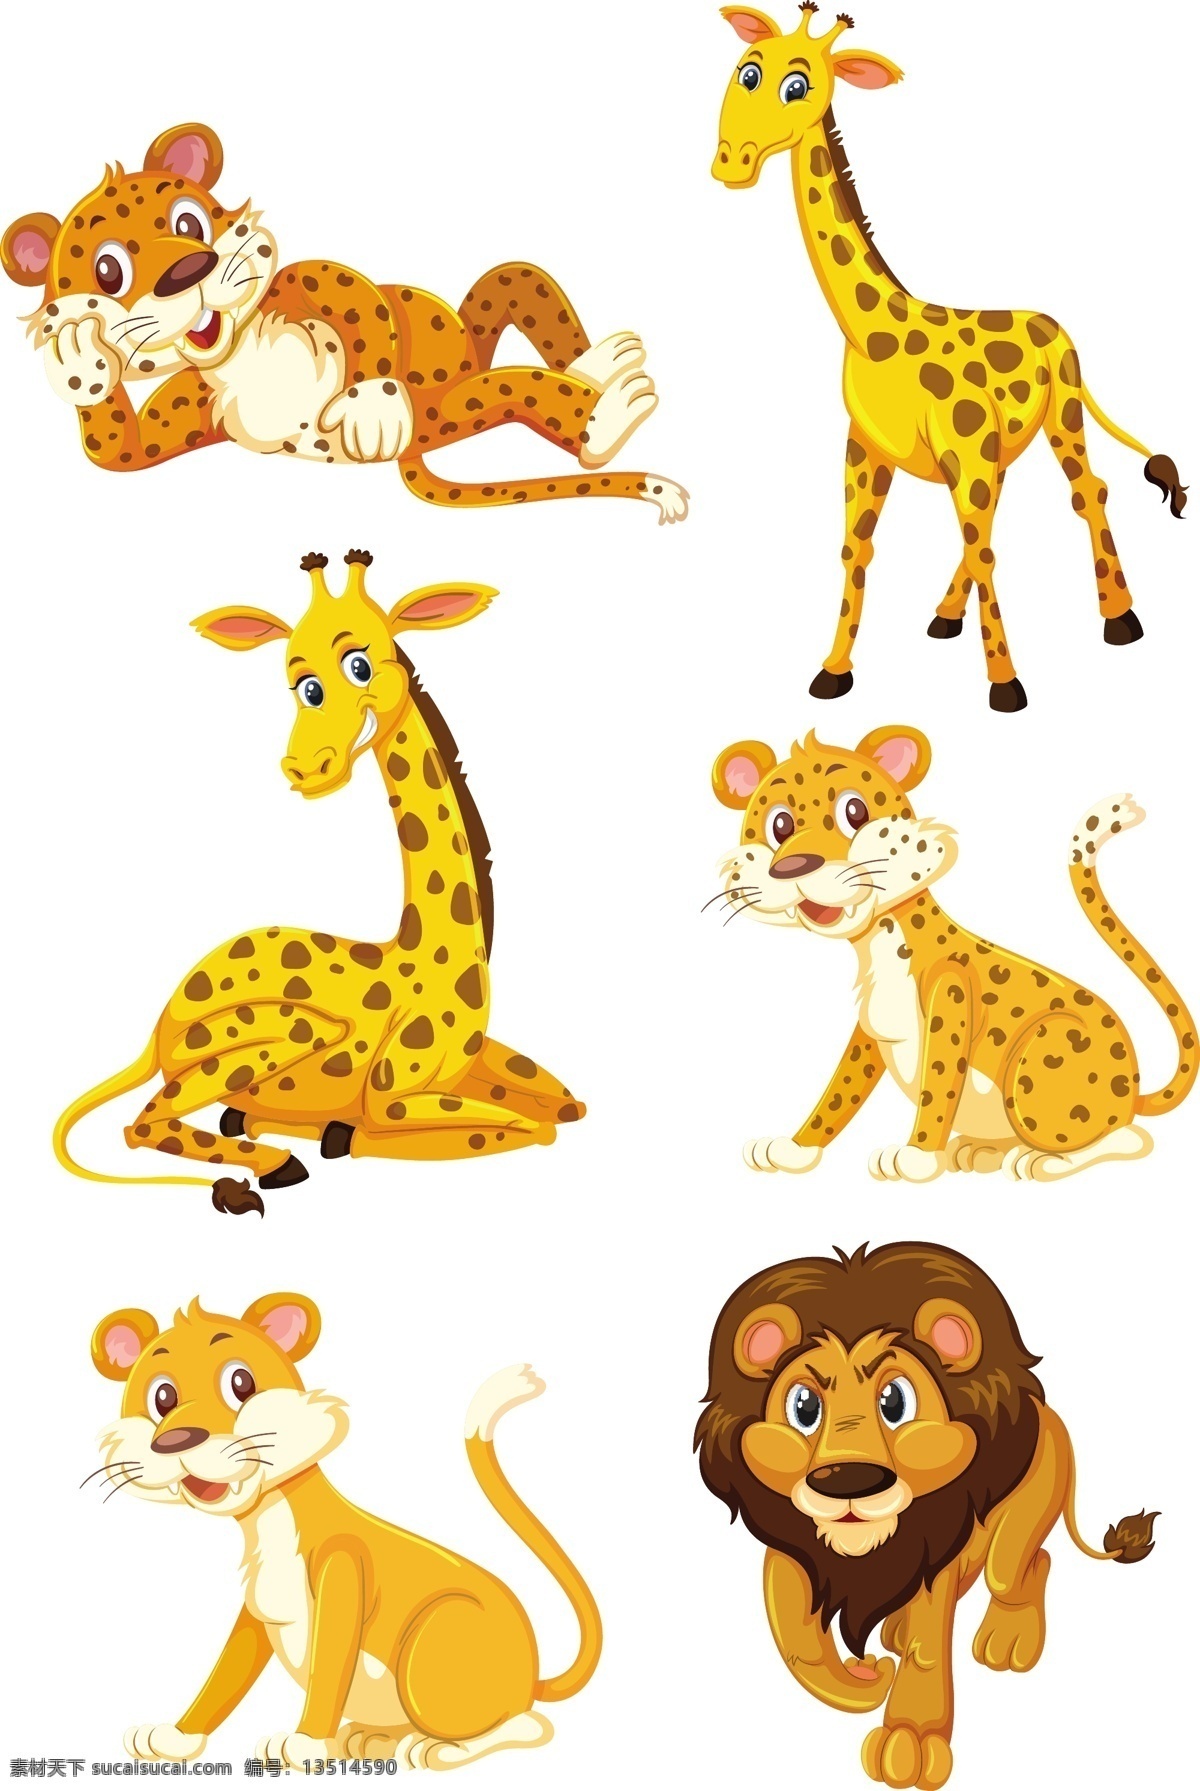 卡通动物素材 野生动物 手绘动物 动物 素描 手绘 卡通动物园 动物园 卡通 可爱动物 小动物 动物贴纸 卡通动物生物 生物世界